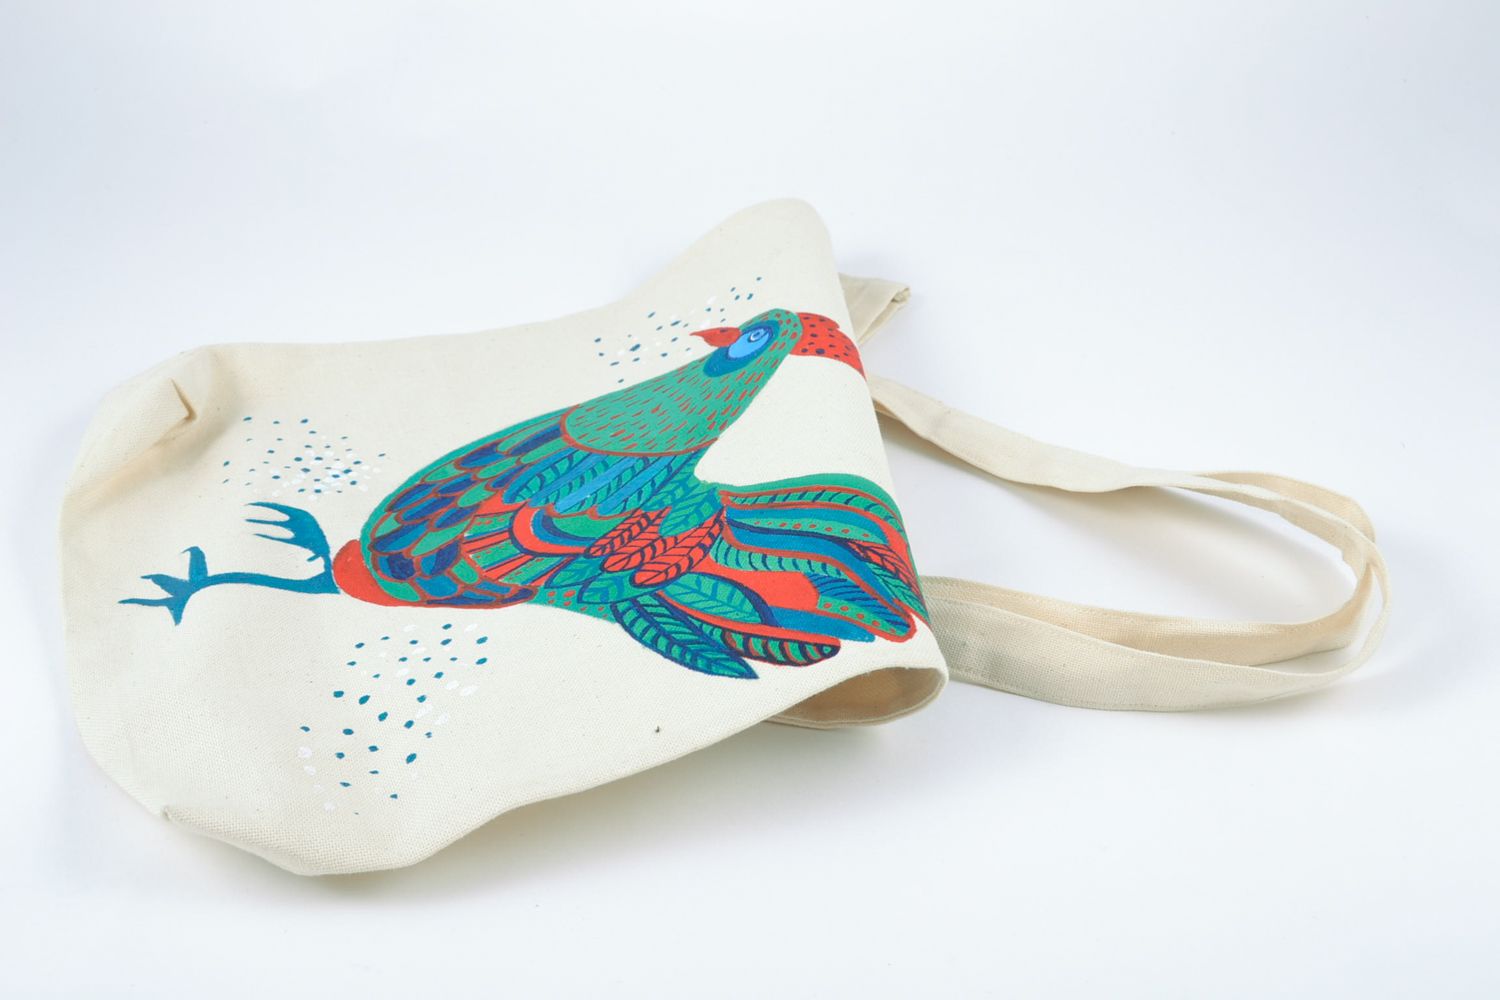 Текстильная сумка из конопляной ткани с нарисованным петухом фото 4